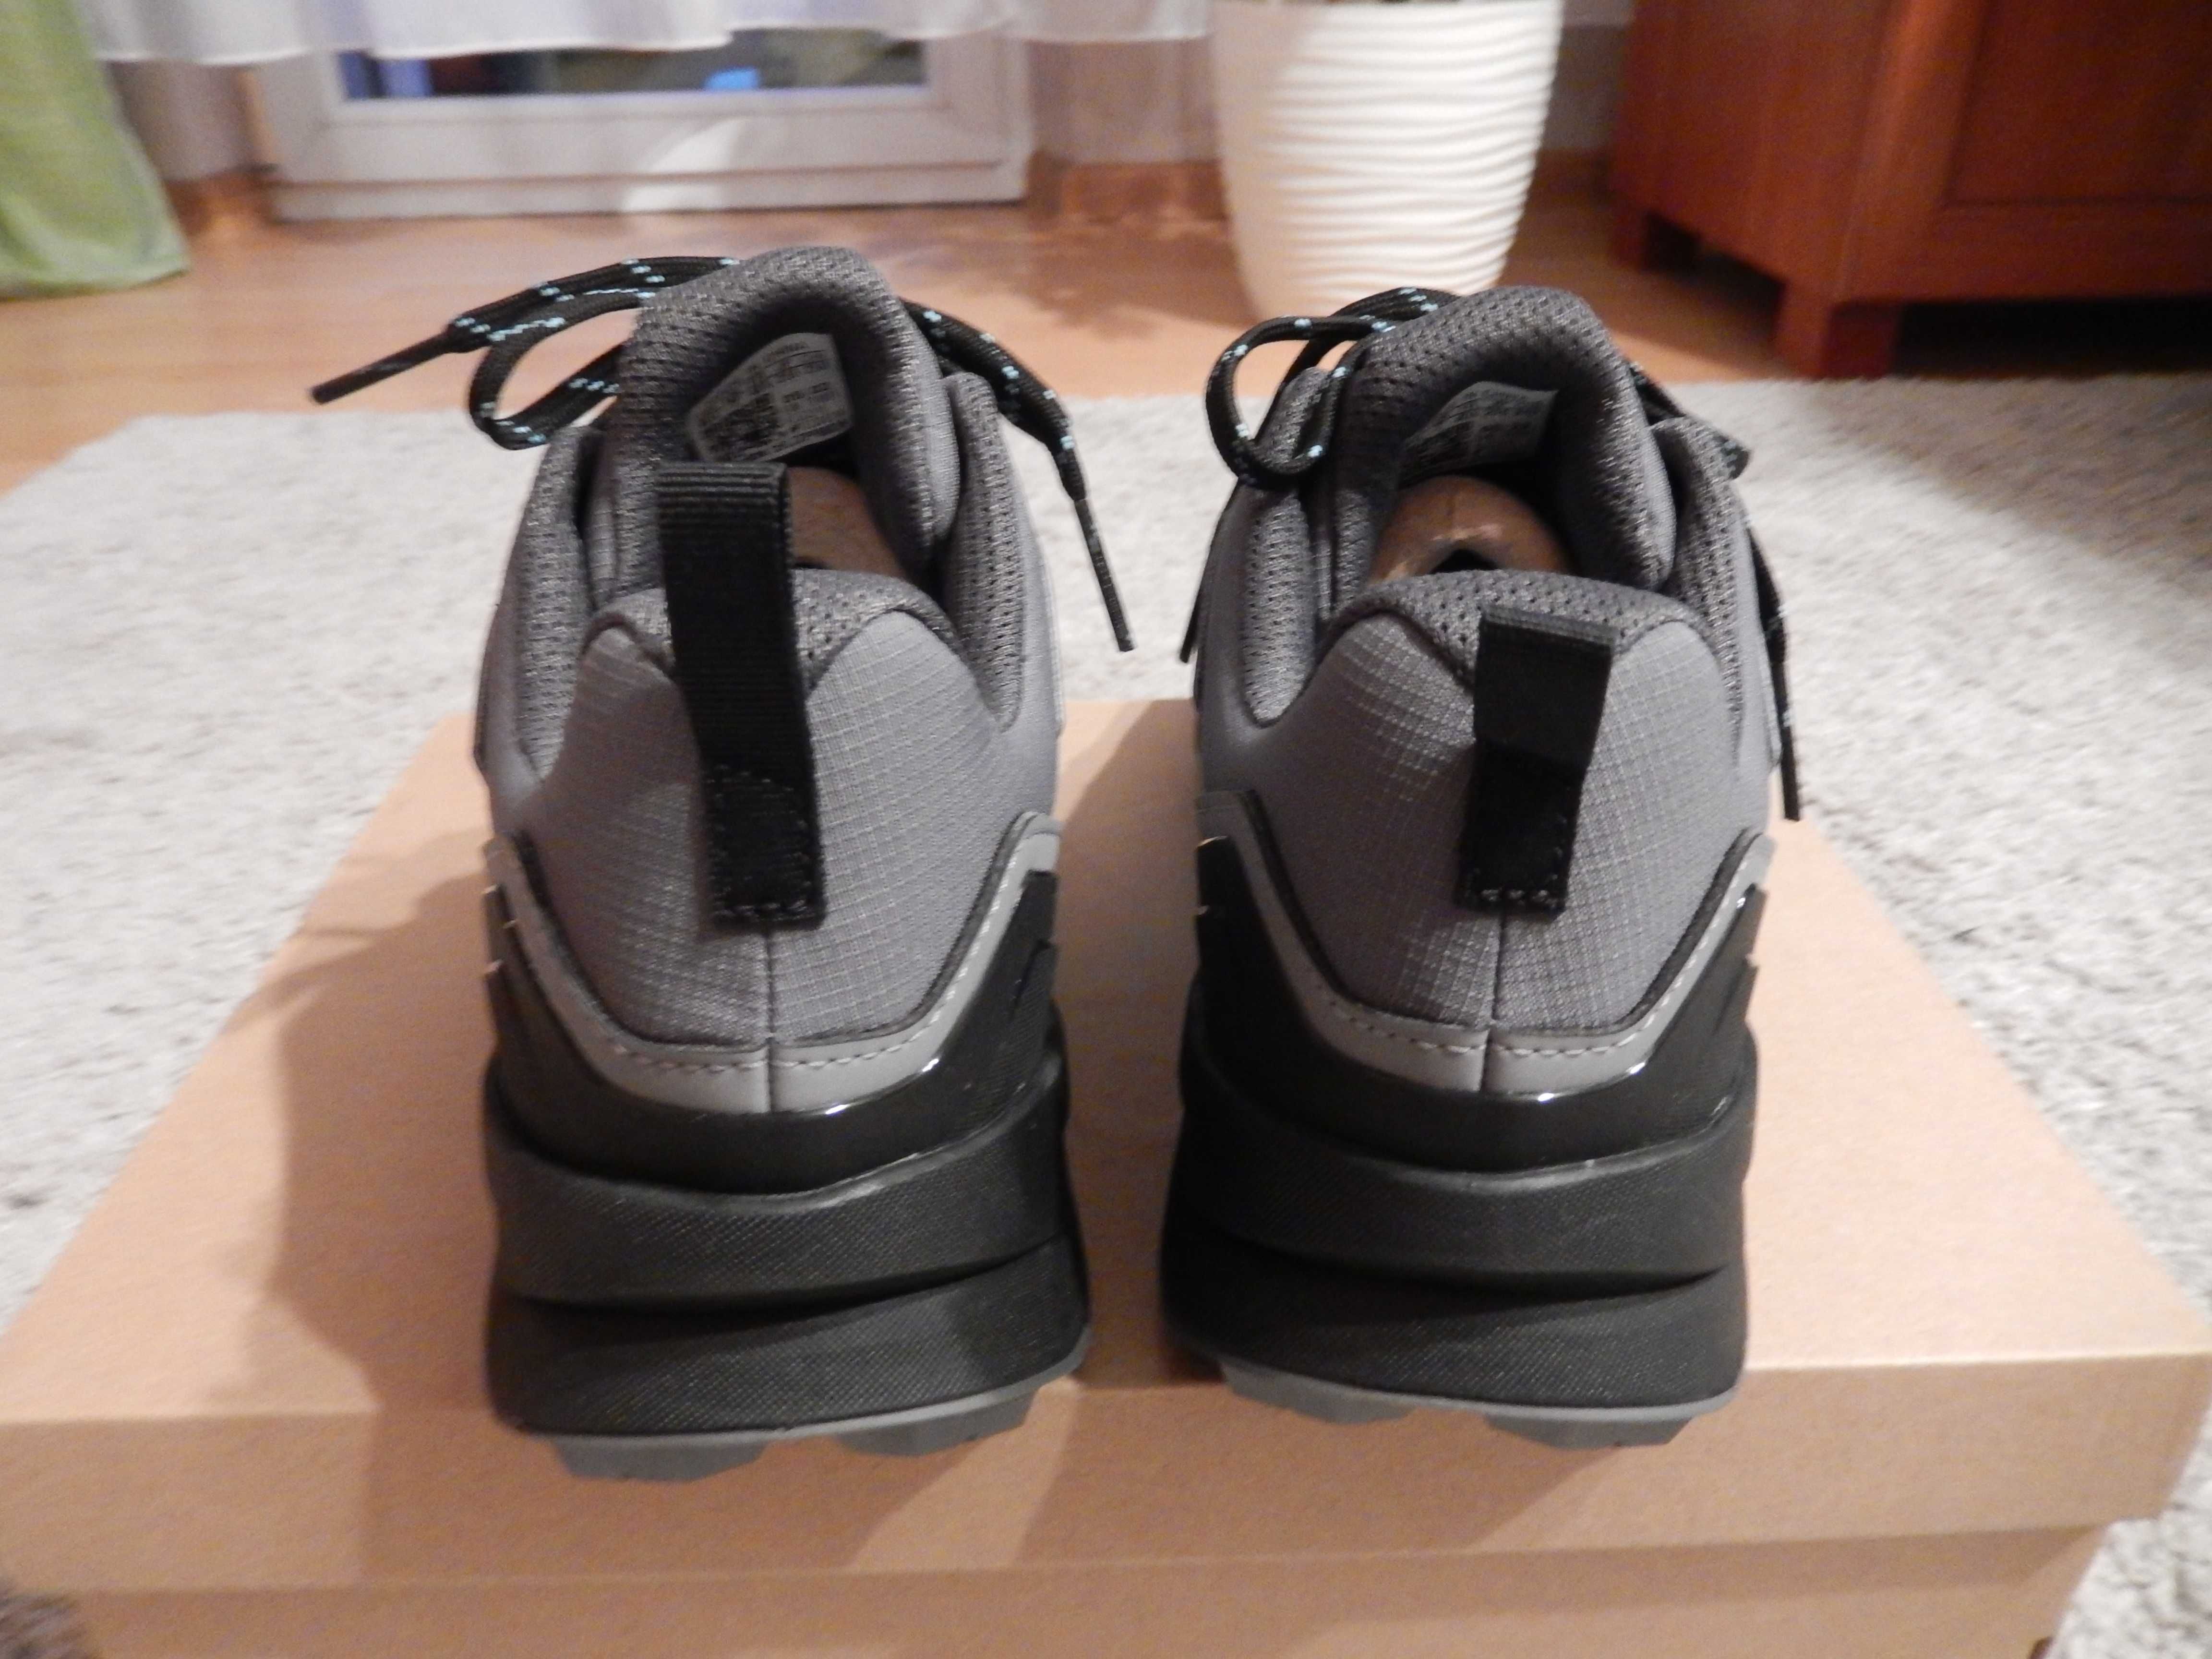 nowe damskie buty Adidas Terrex R3 GTX rozmiar 40 2/3 (25,5 cm)